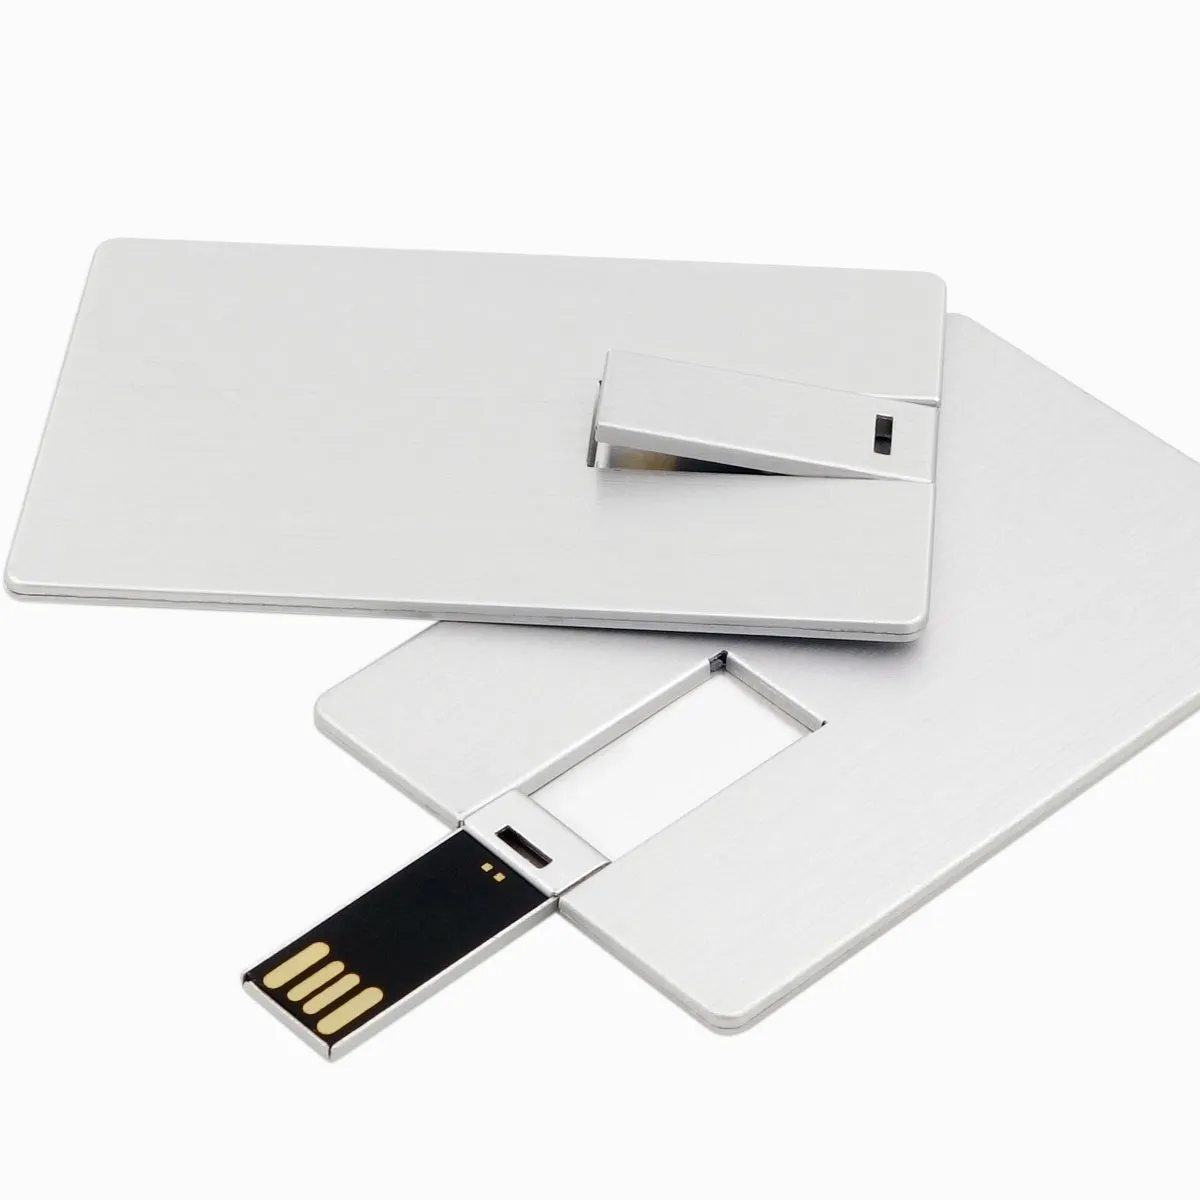 Pendrive de Metal para negocios, tarjeta Flash USB de 32GB, 16GB, 8GB y 4GB, promoción de regalos, logotipo personalizado